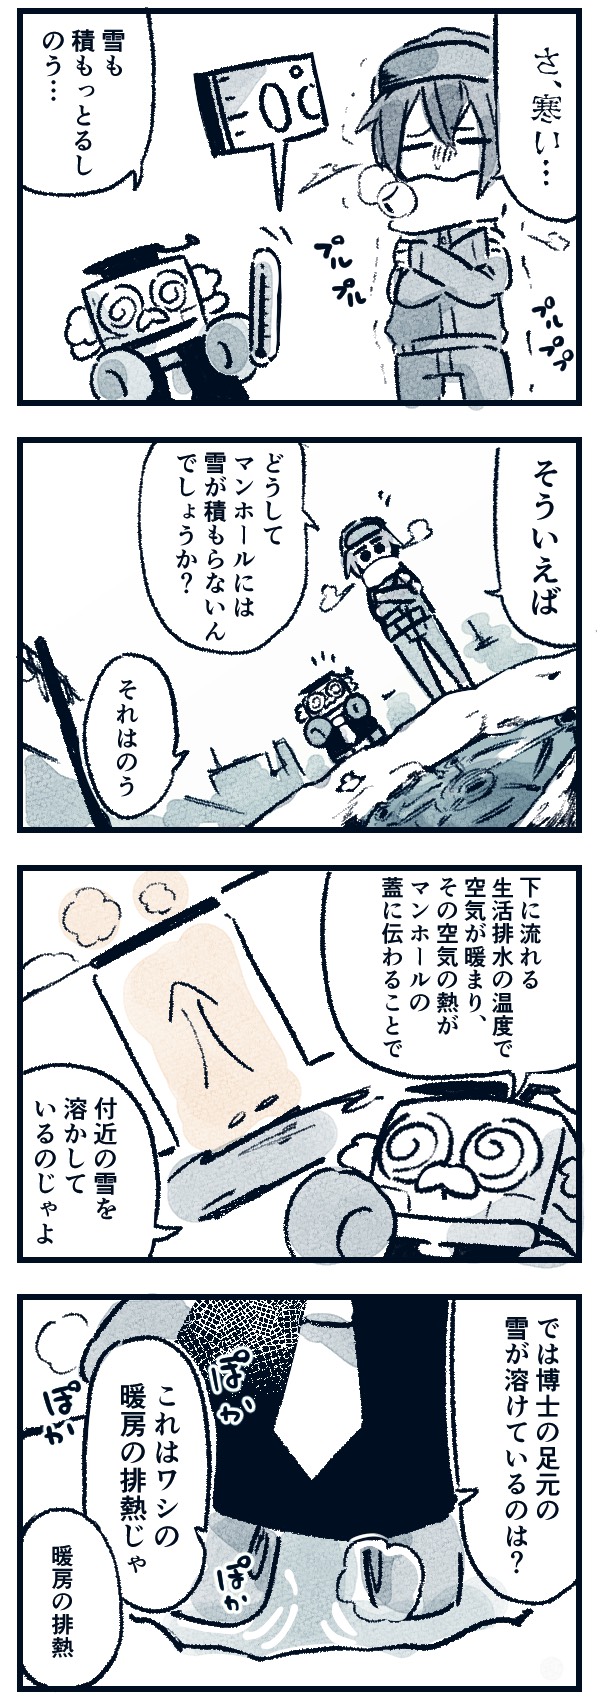 【ドラ博士 4コマ漫画#28】マンホールの謎